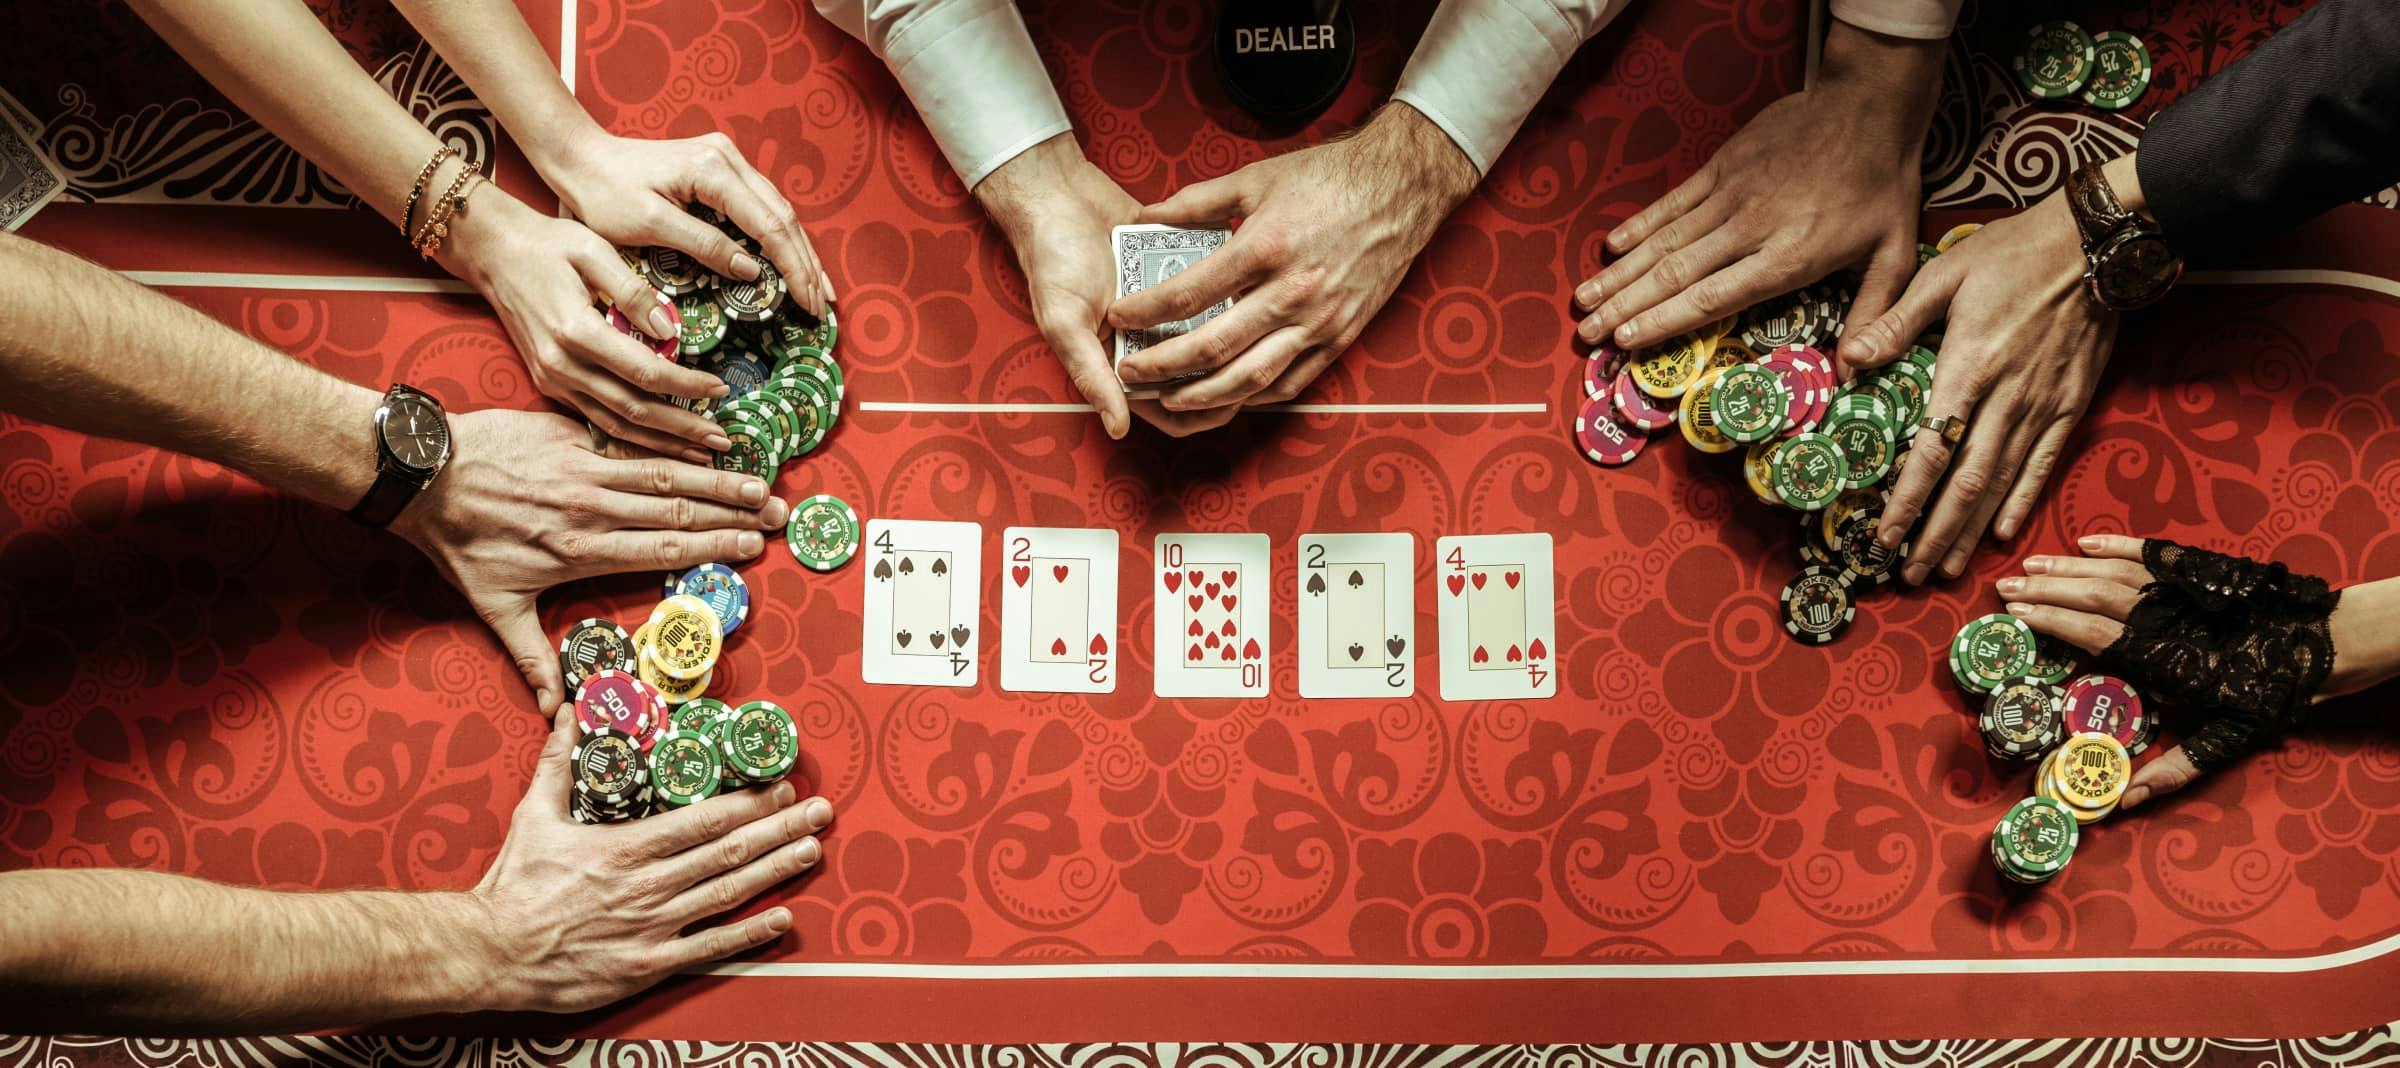 Learn the Basics of Poker Chips